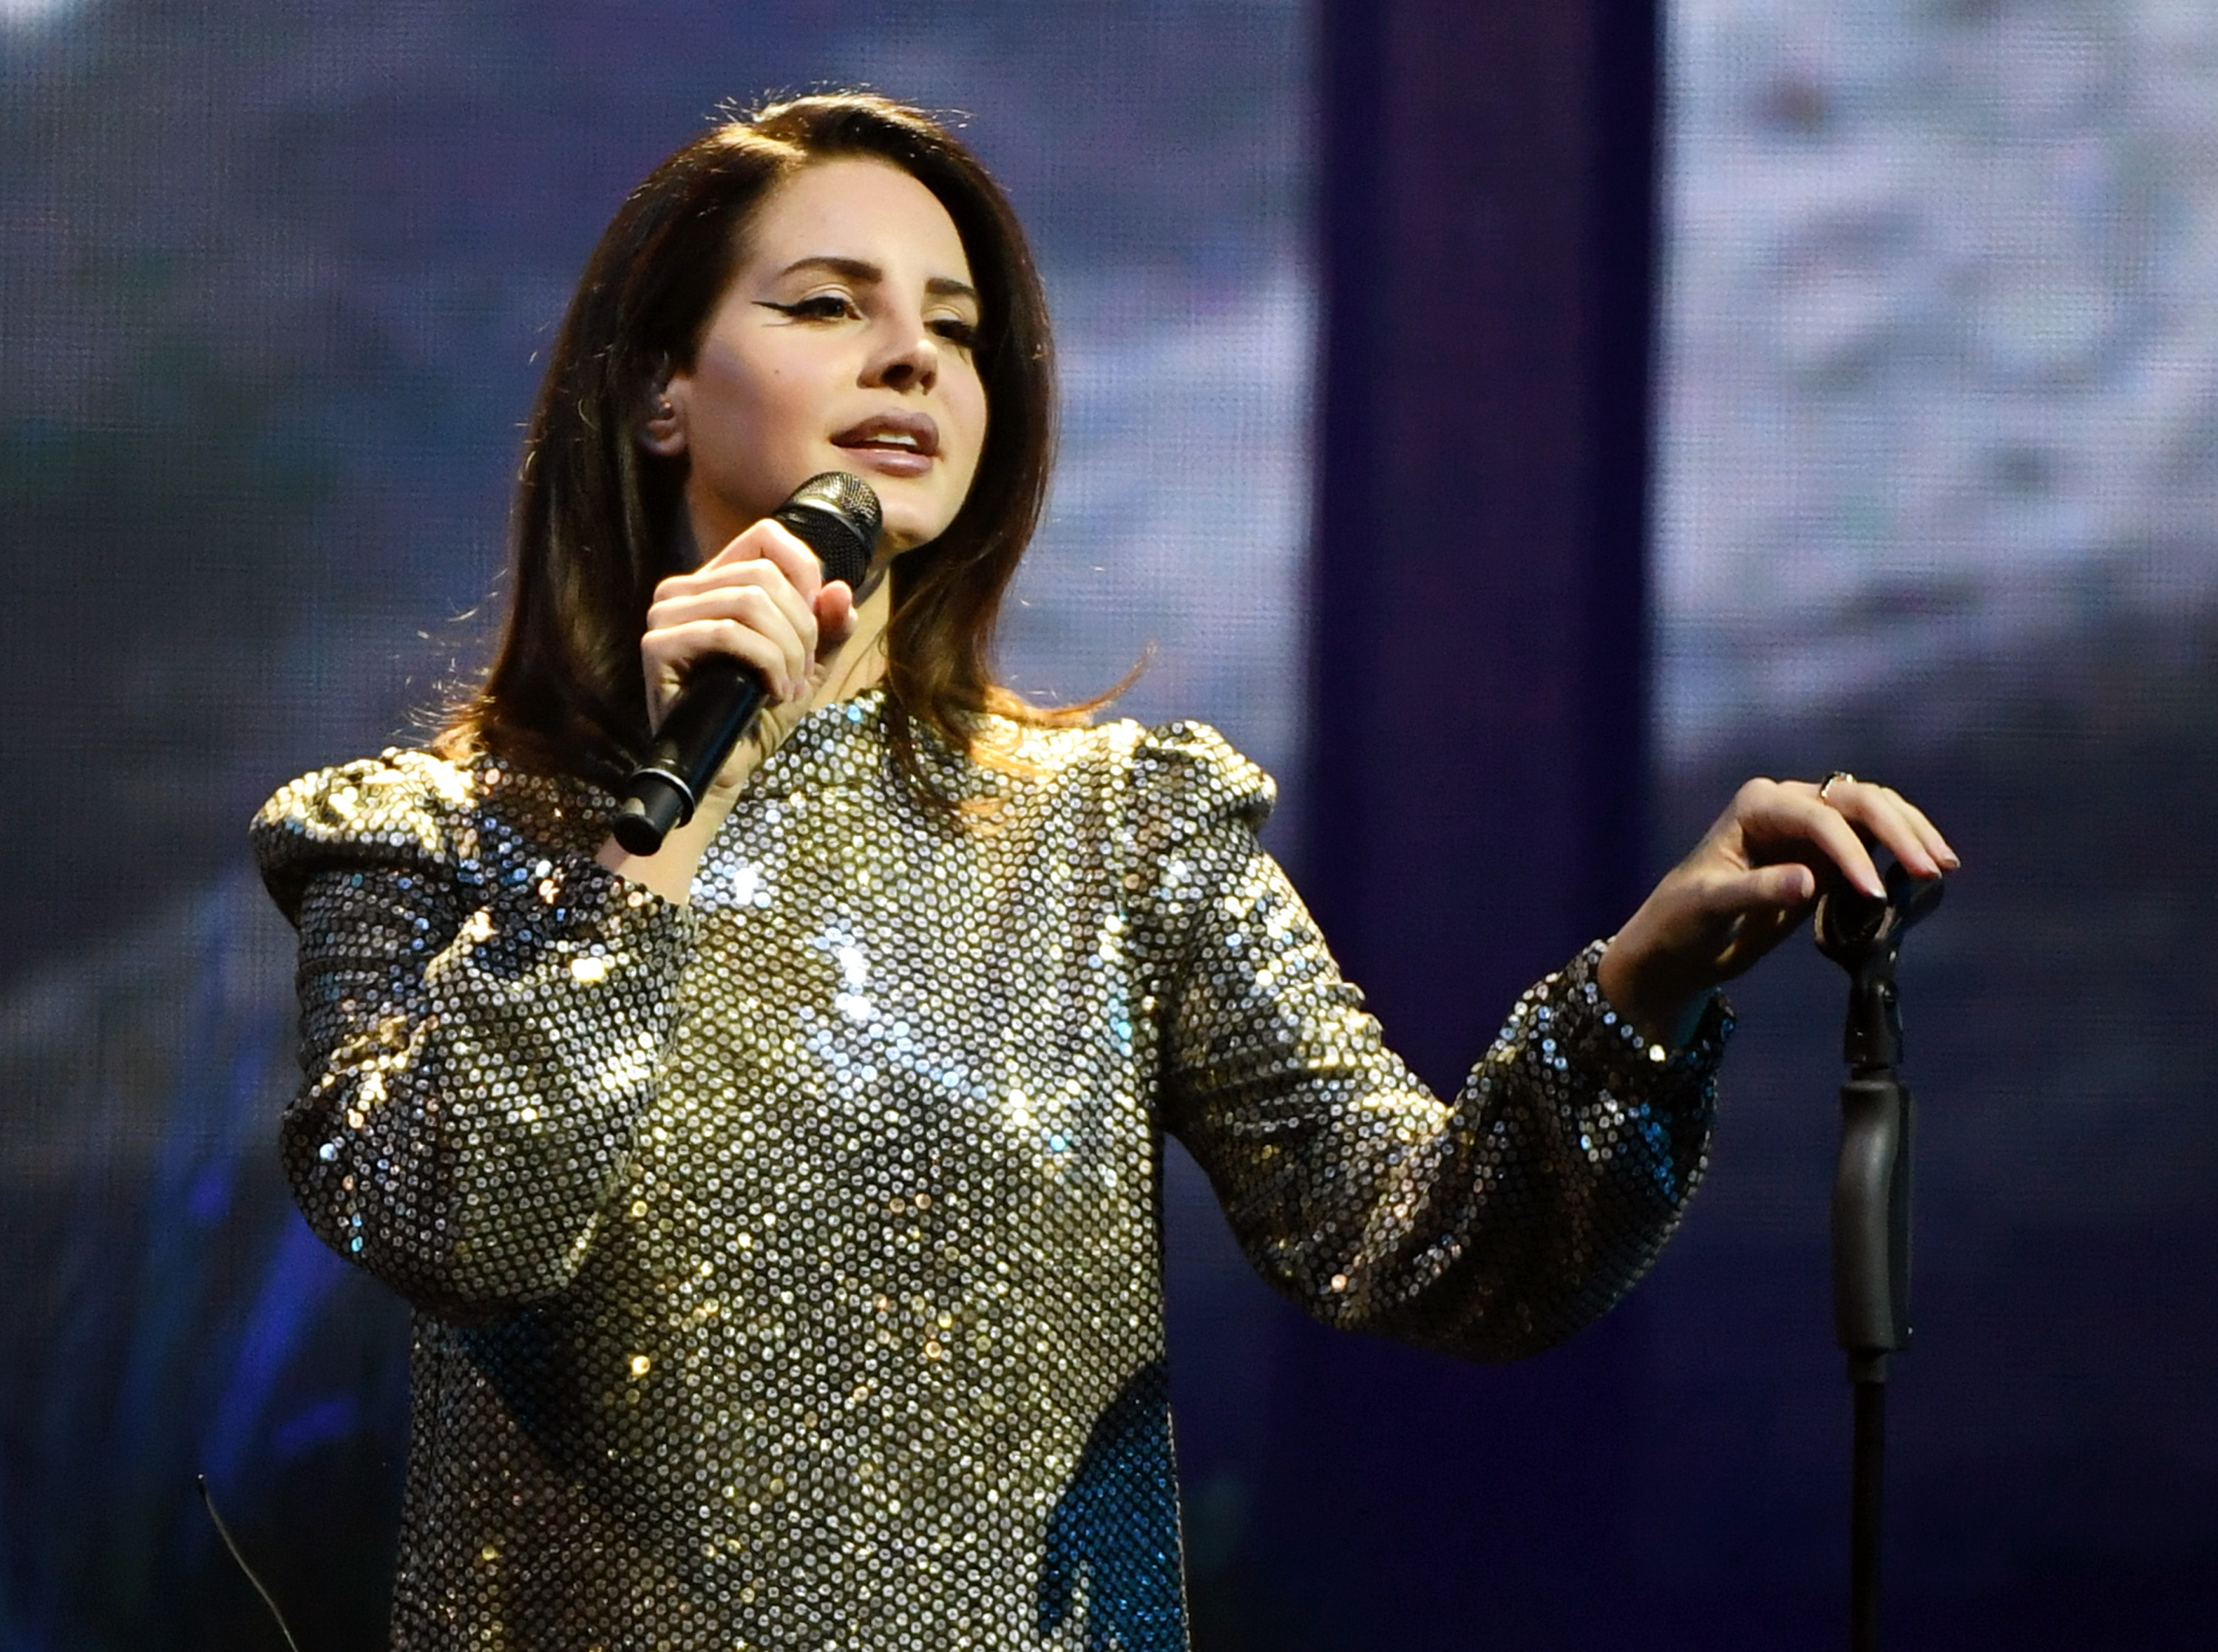 Lana Del Rey cantando no show em Mandalay Bay, em Las Vegas; ela usa uma roupa brilhante e olha para o público segurando o microfone em uma das mãos